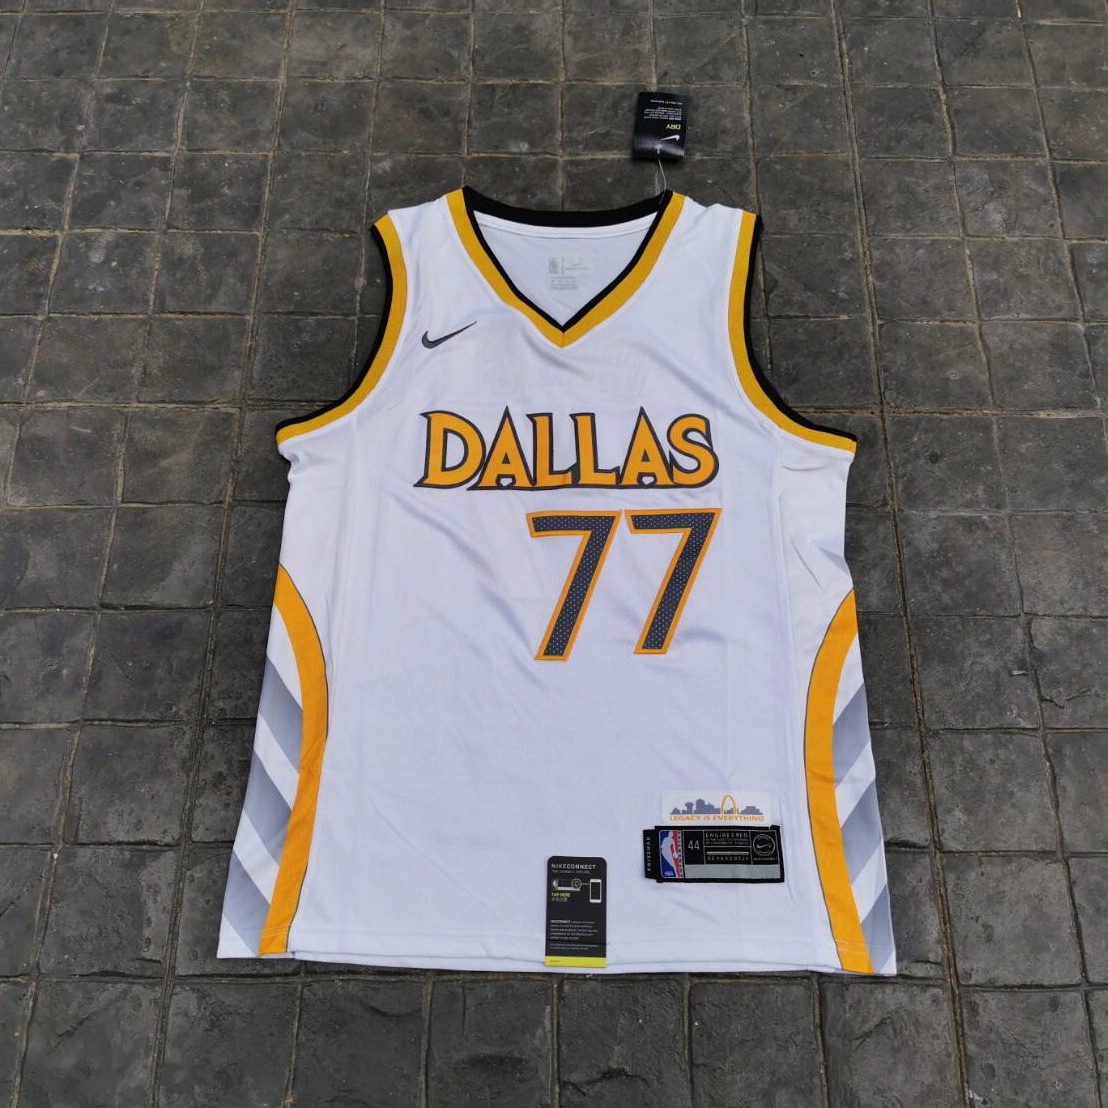 เสื้อบาสเกตบอล basketball jerseys(พร้อมจัดส่ง)#Dallas.New city edition. 77 Doncic.